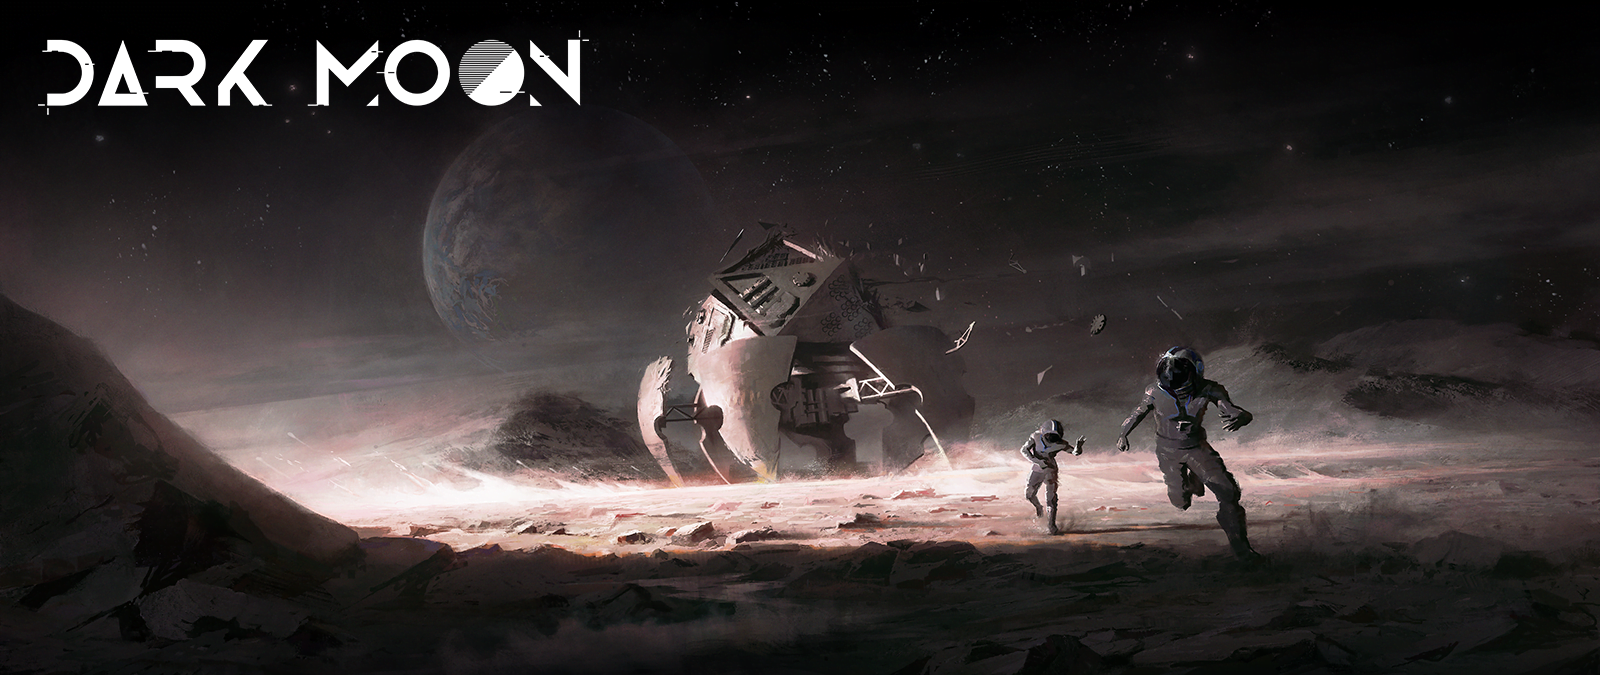 Cbolão | dark moon lançamento oficialmente anunciado! | dark moon key art with logo | notícias